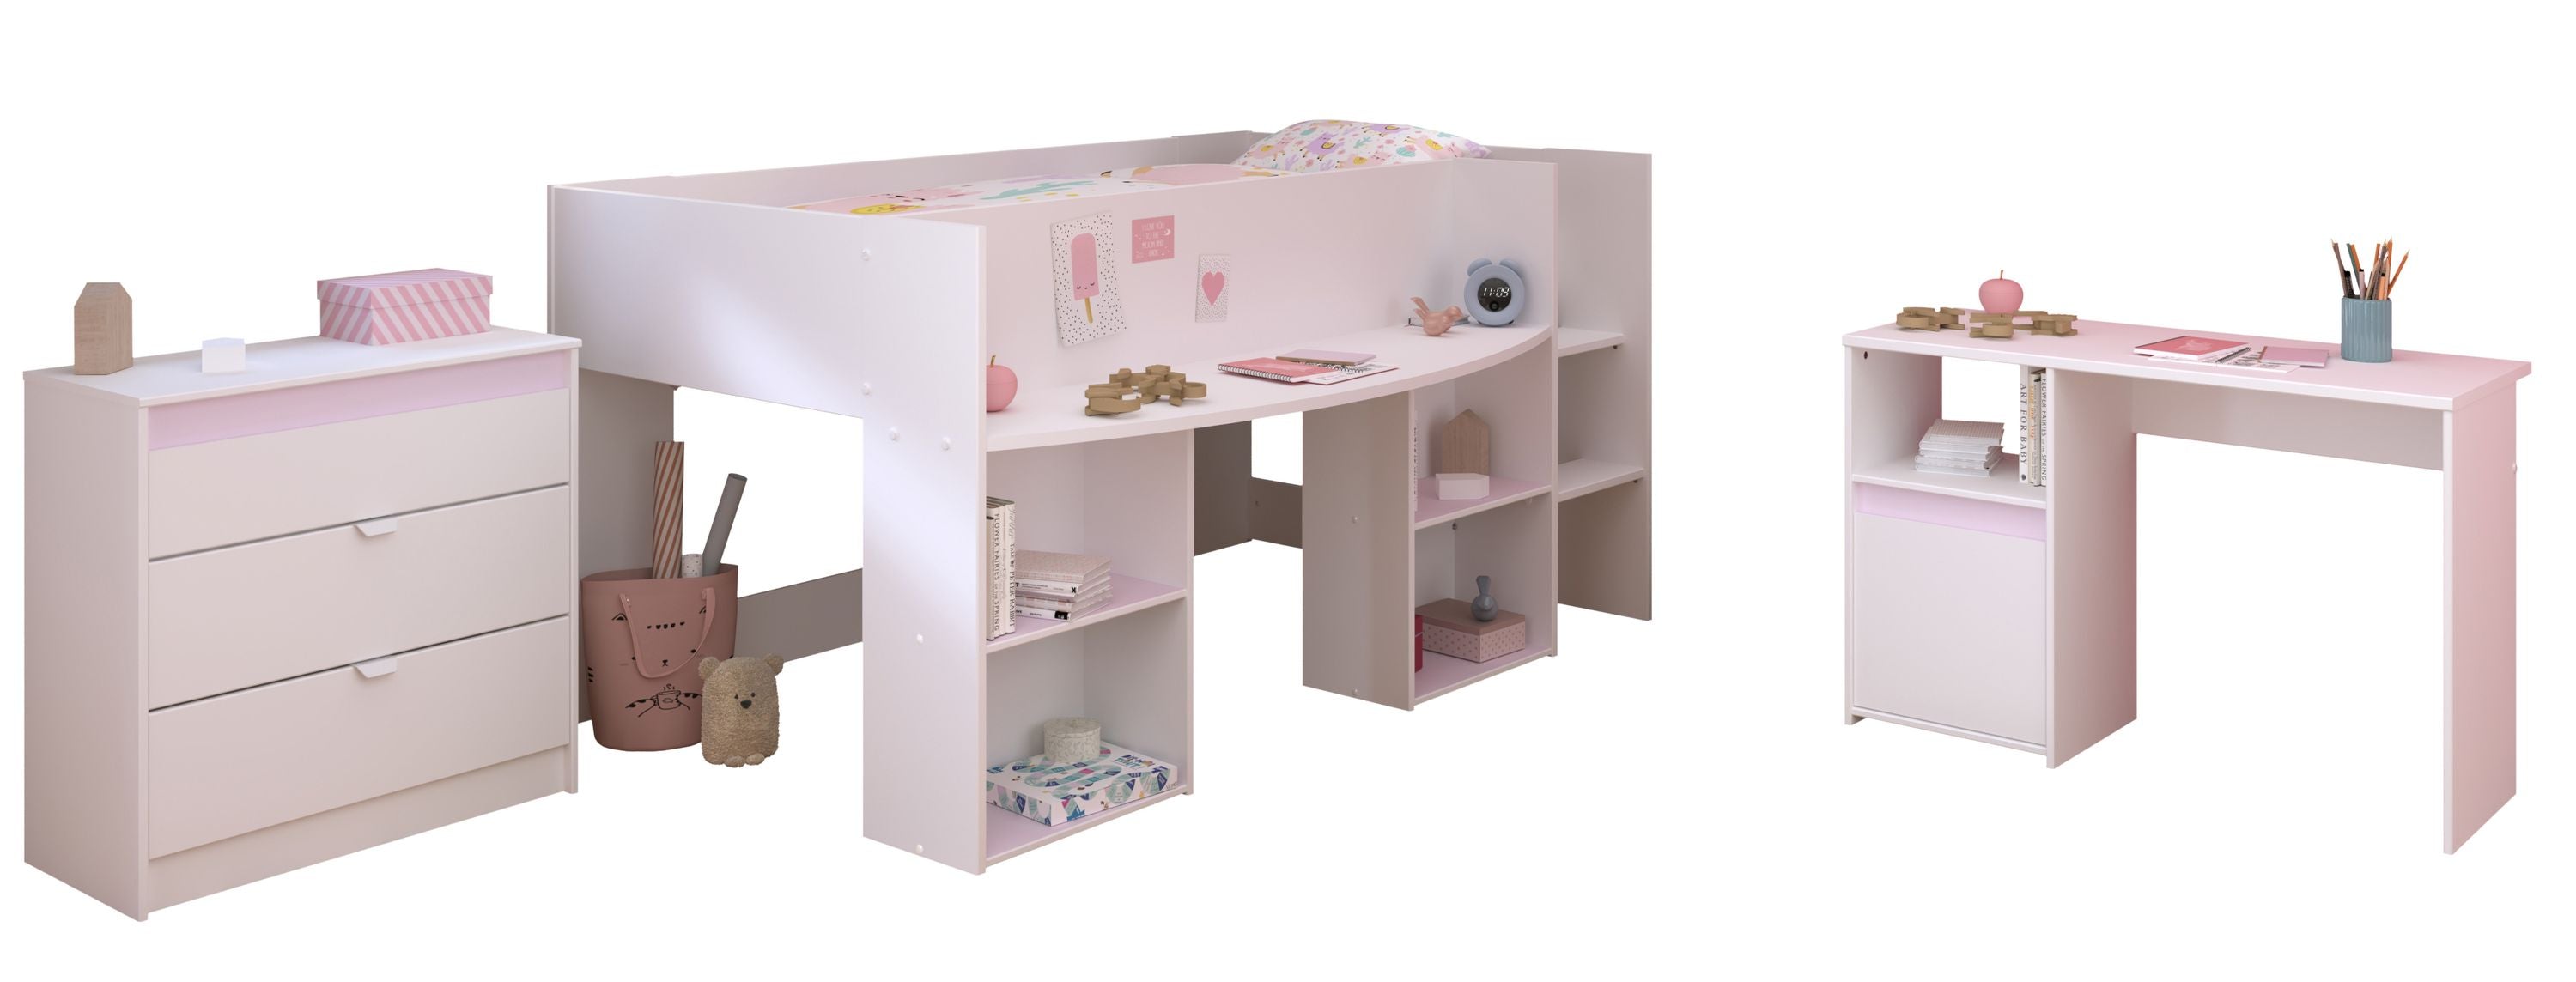 Kinderzimmer Pirouette 15 Parisot 3-tlg Hochbett 90*200 cm + Kommode + Schreibtisch weiß